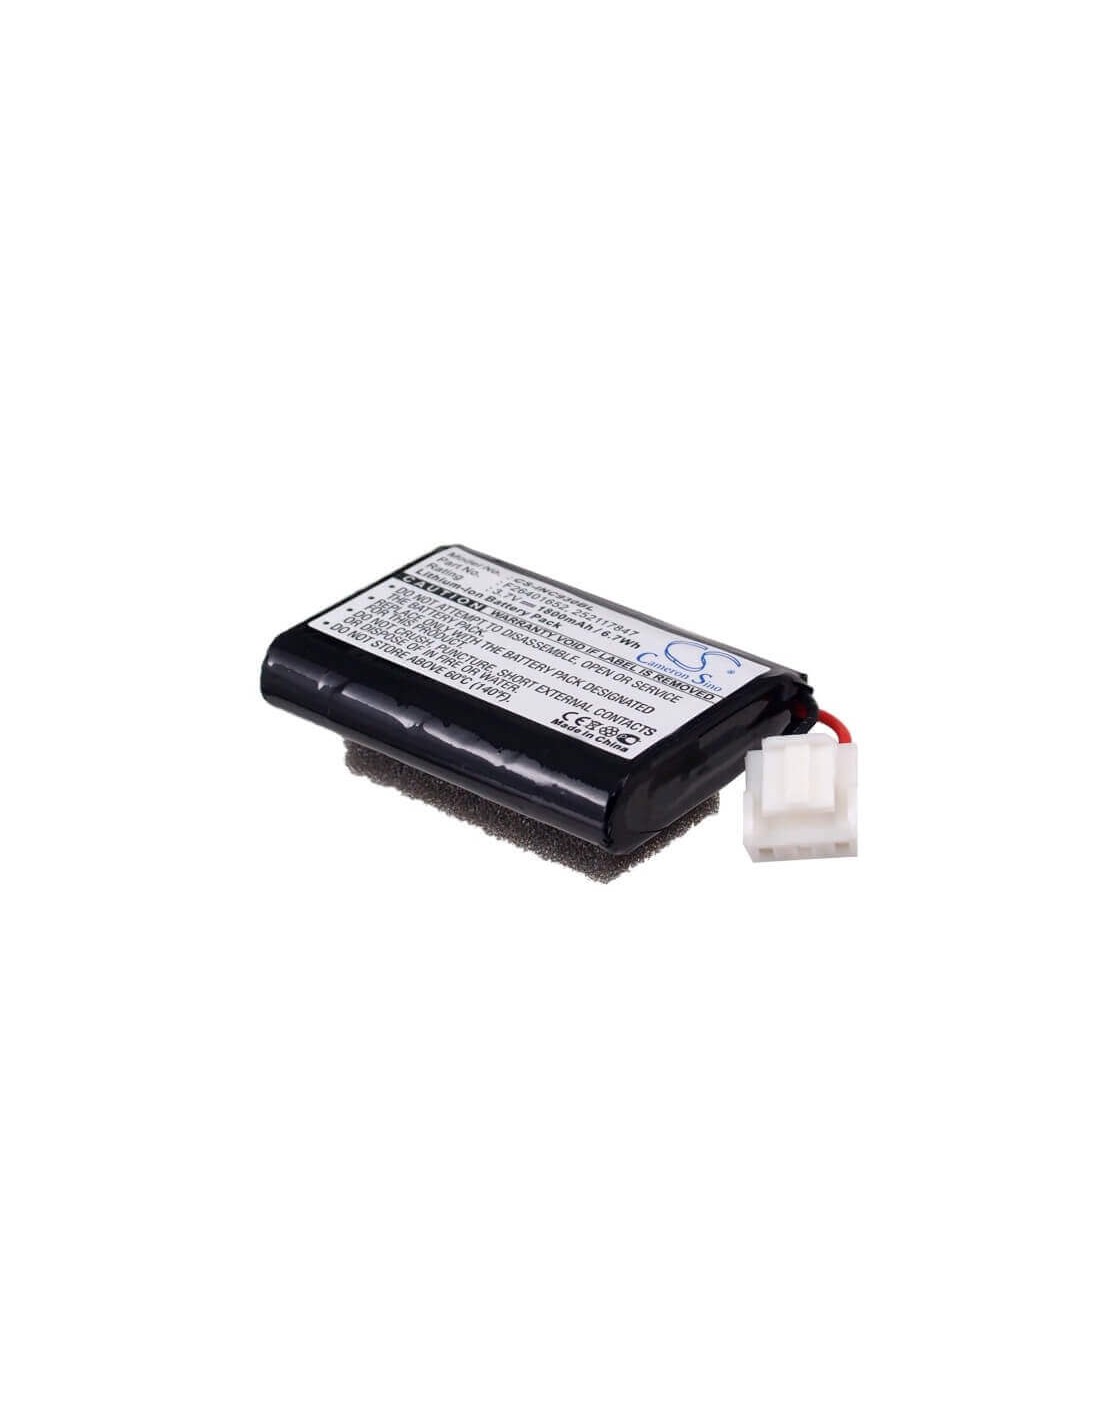 Battery for Ingenico Eft930, Eft930-b, Eft930-p 3.7V, 1800mAh - 6.66Wh